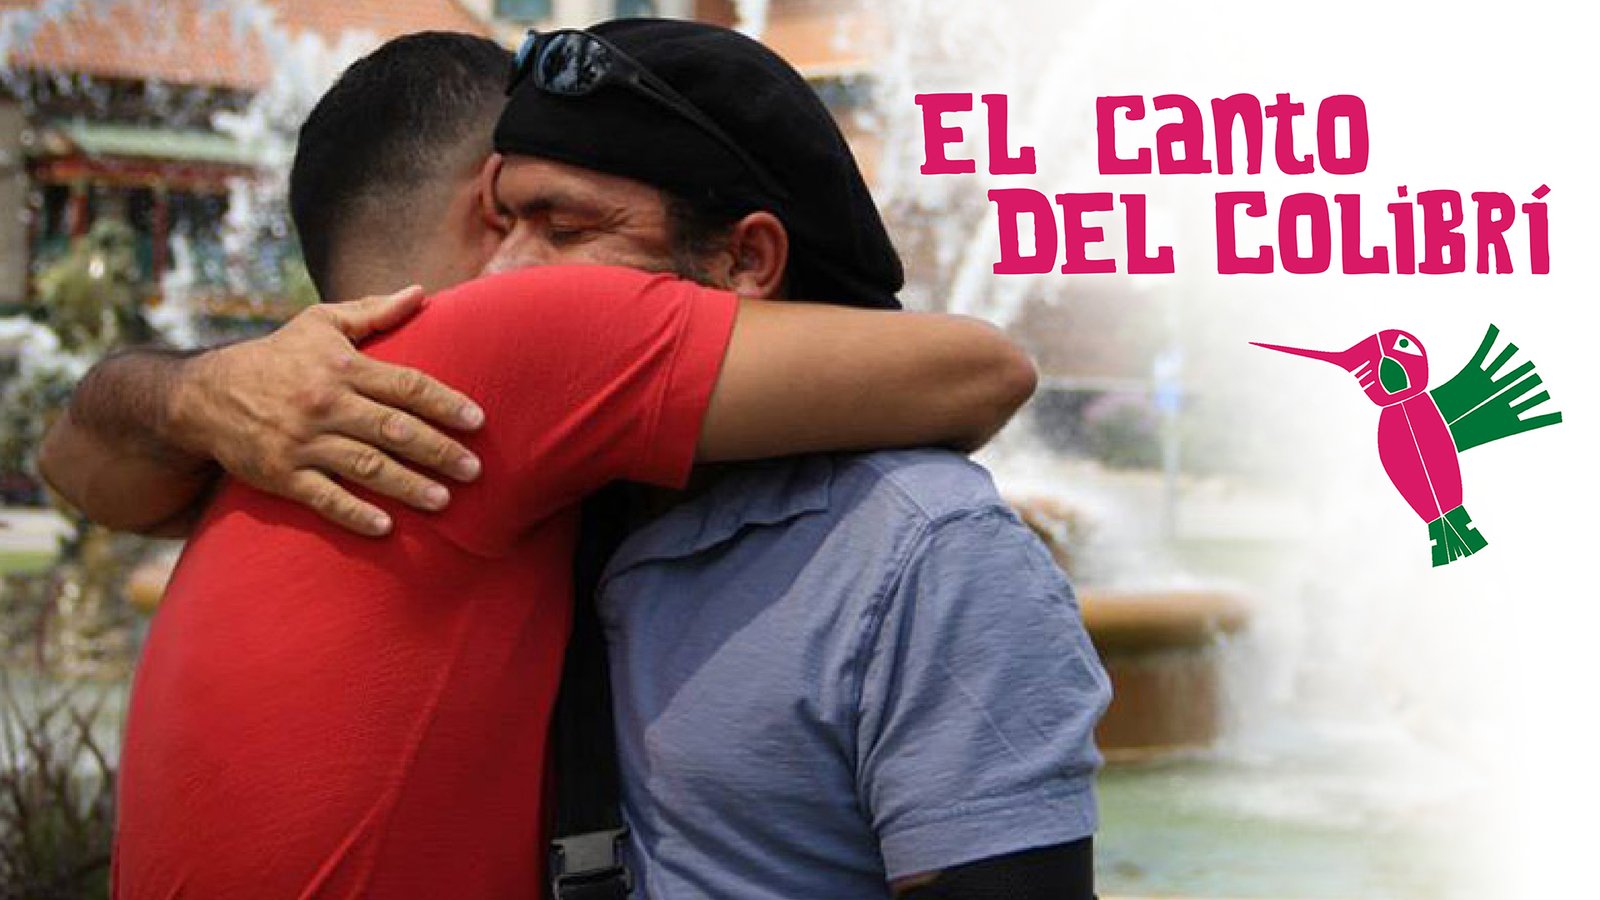 El Canto del Colibri - Latino Immigrant Men and Their LGBTQ Family Members